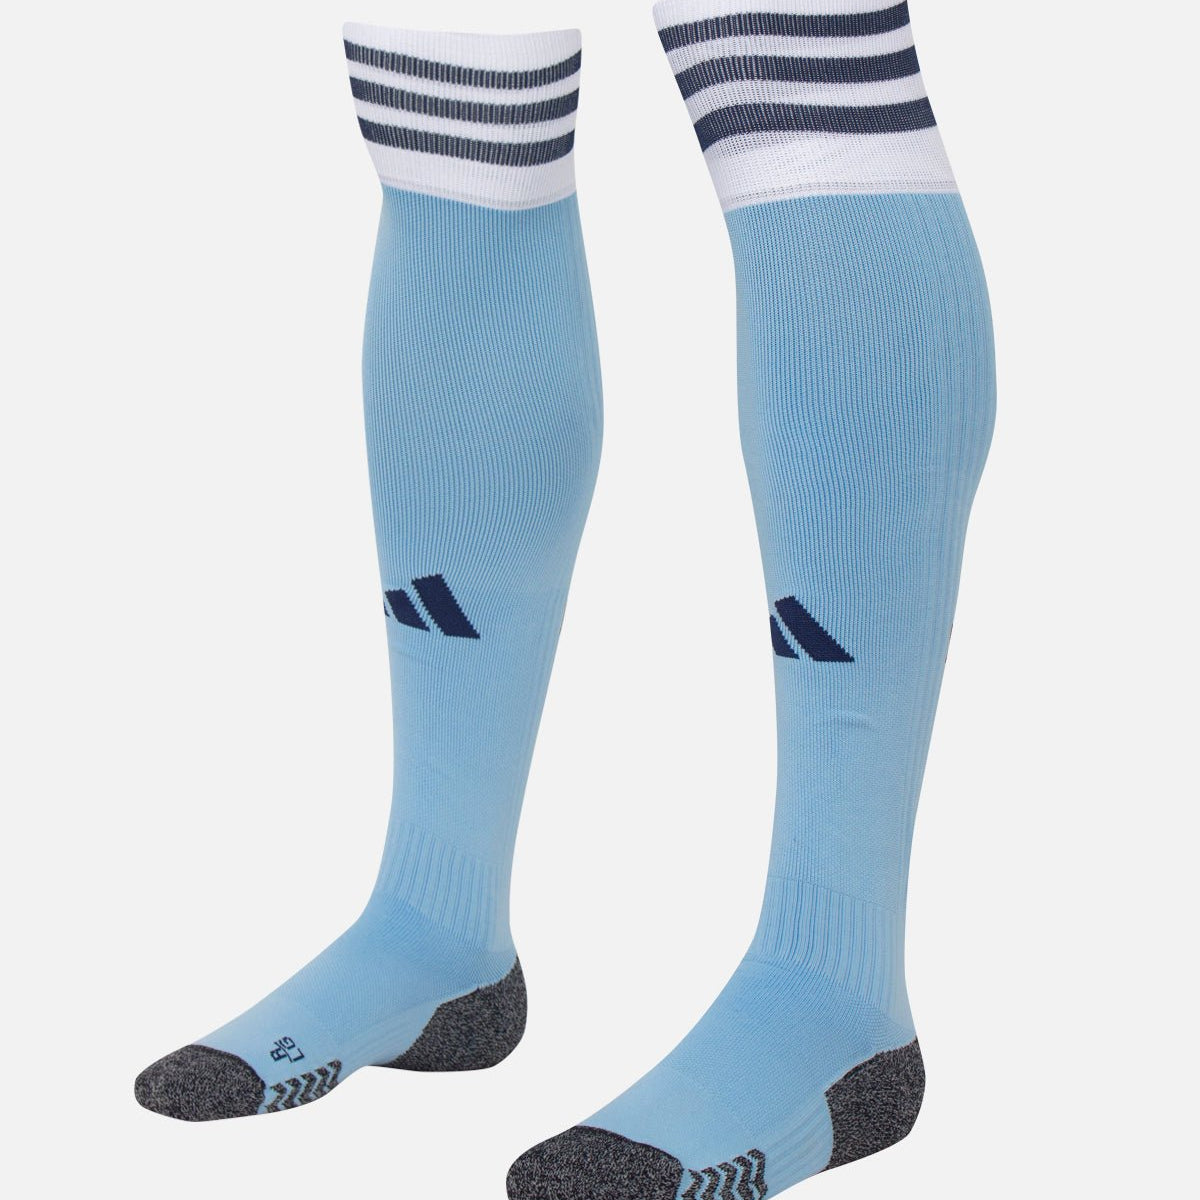 Men's Compression Socks for sale in Nottingham, United Kingdom